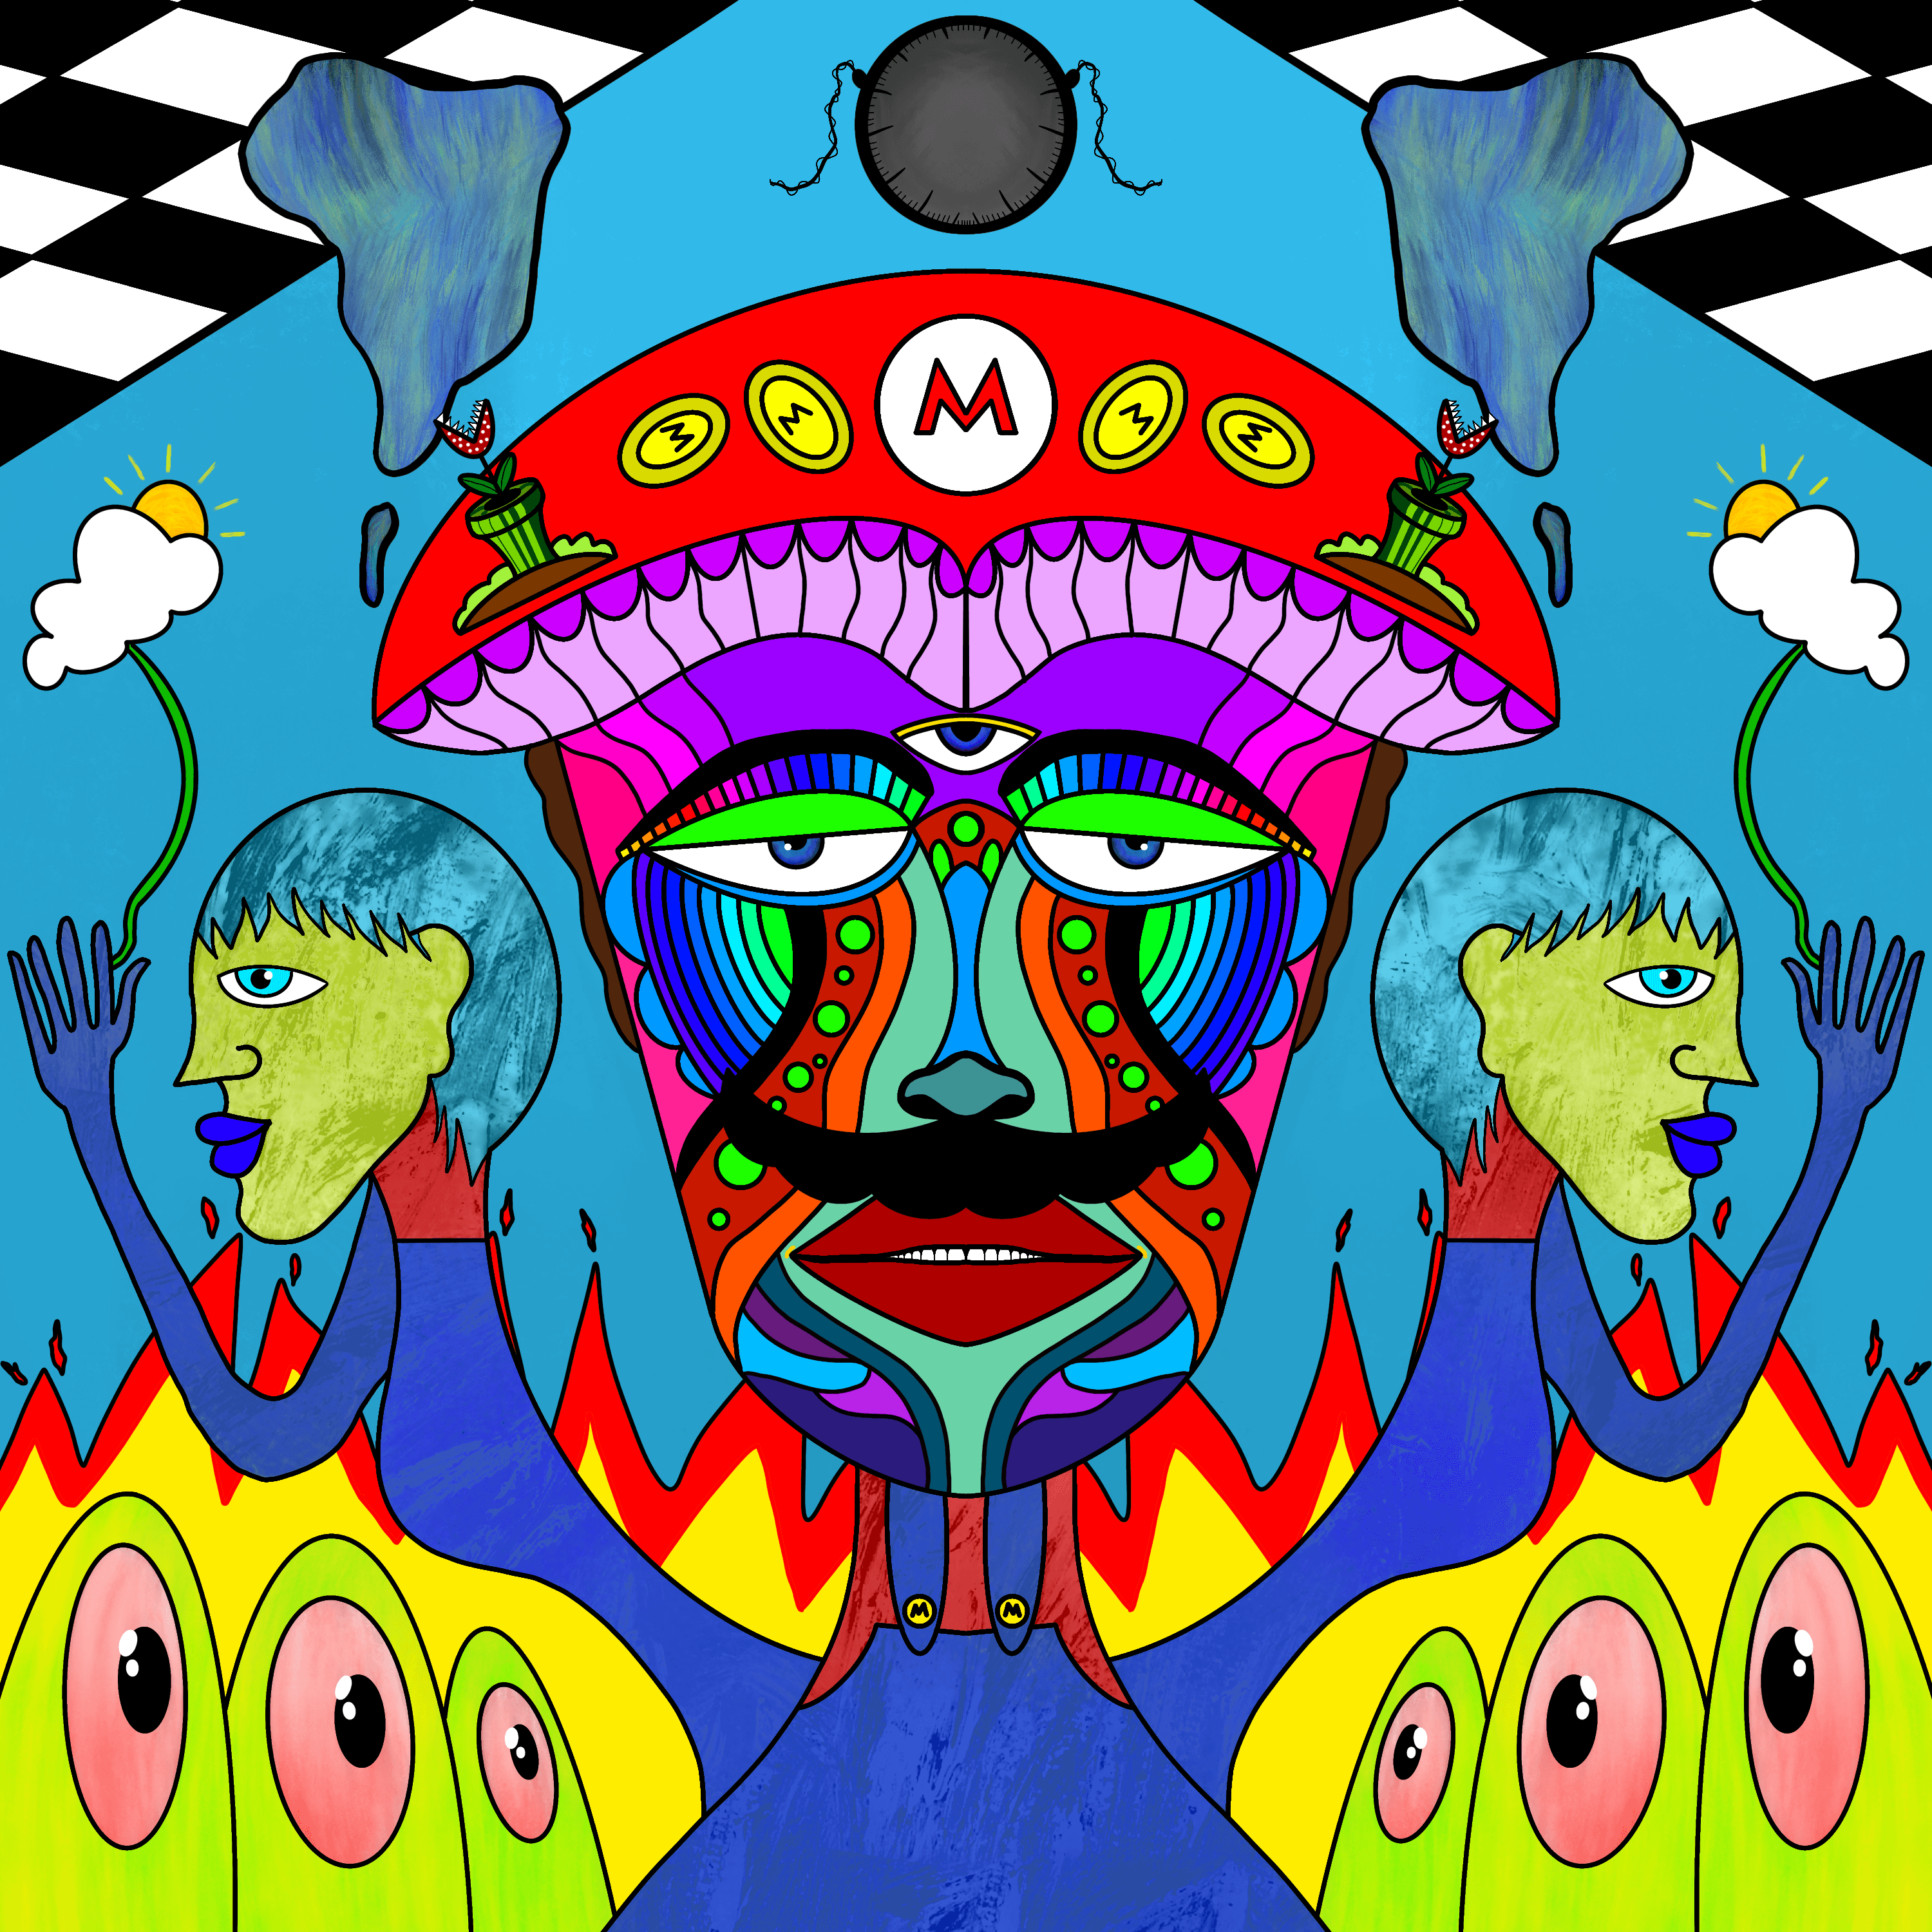 Cubist Mario